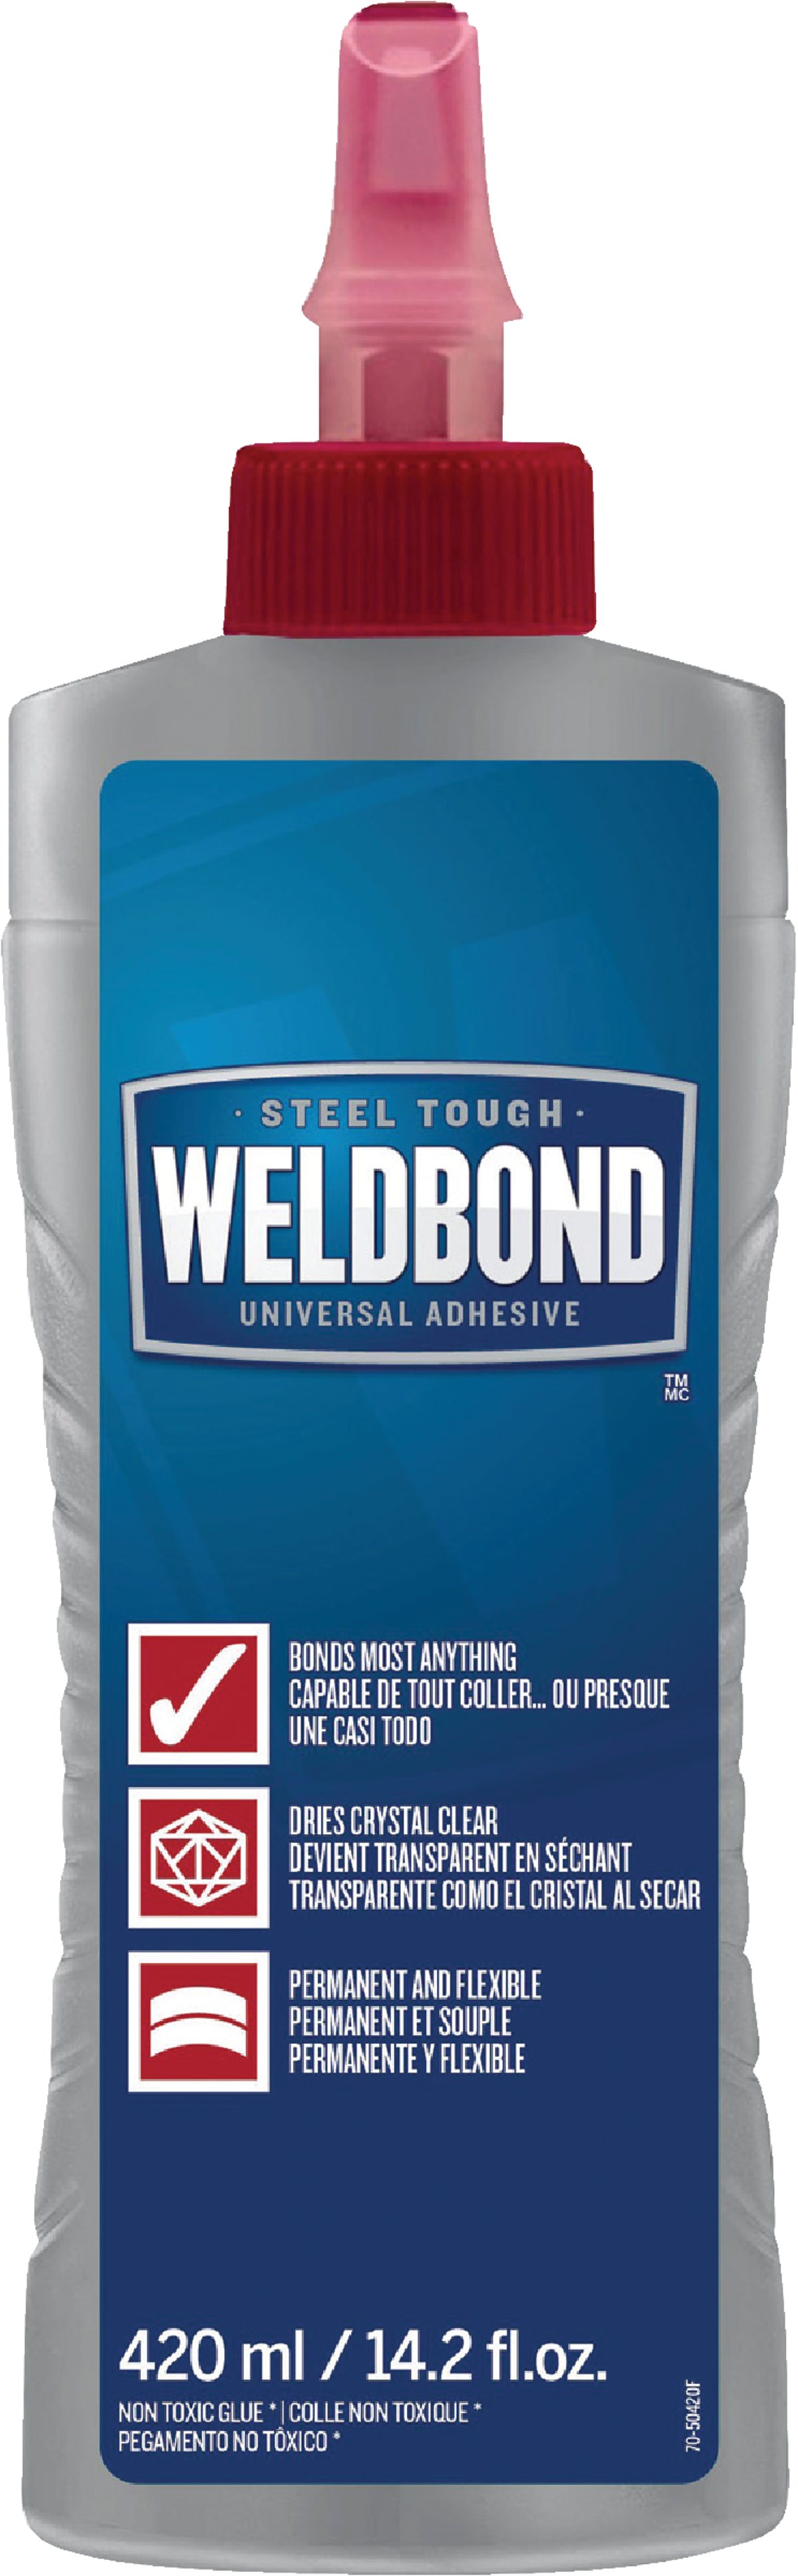 Weldbond Crystal Clear Flexible glue